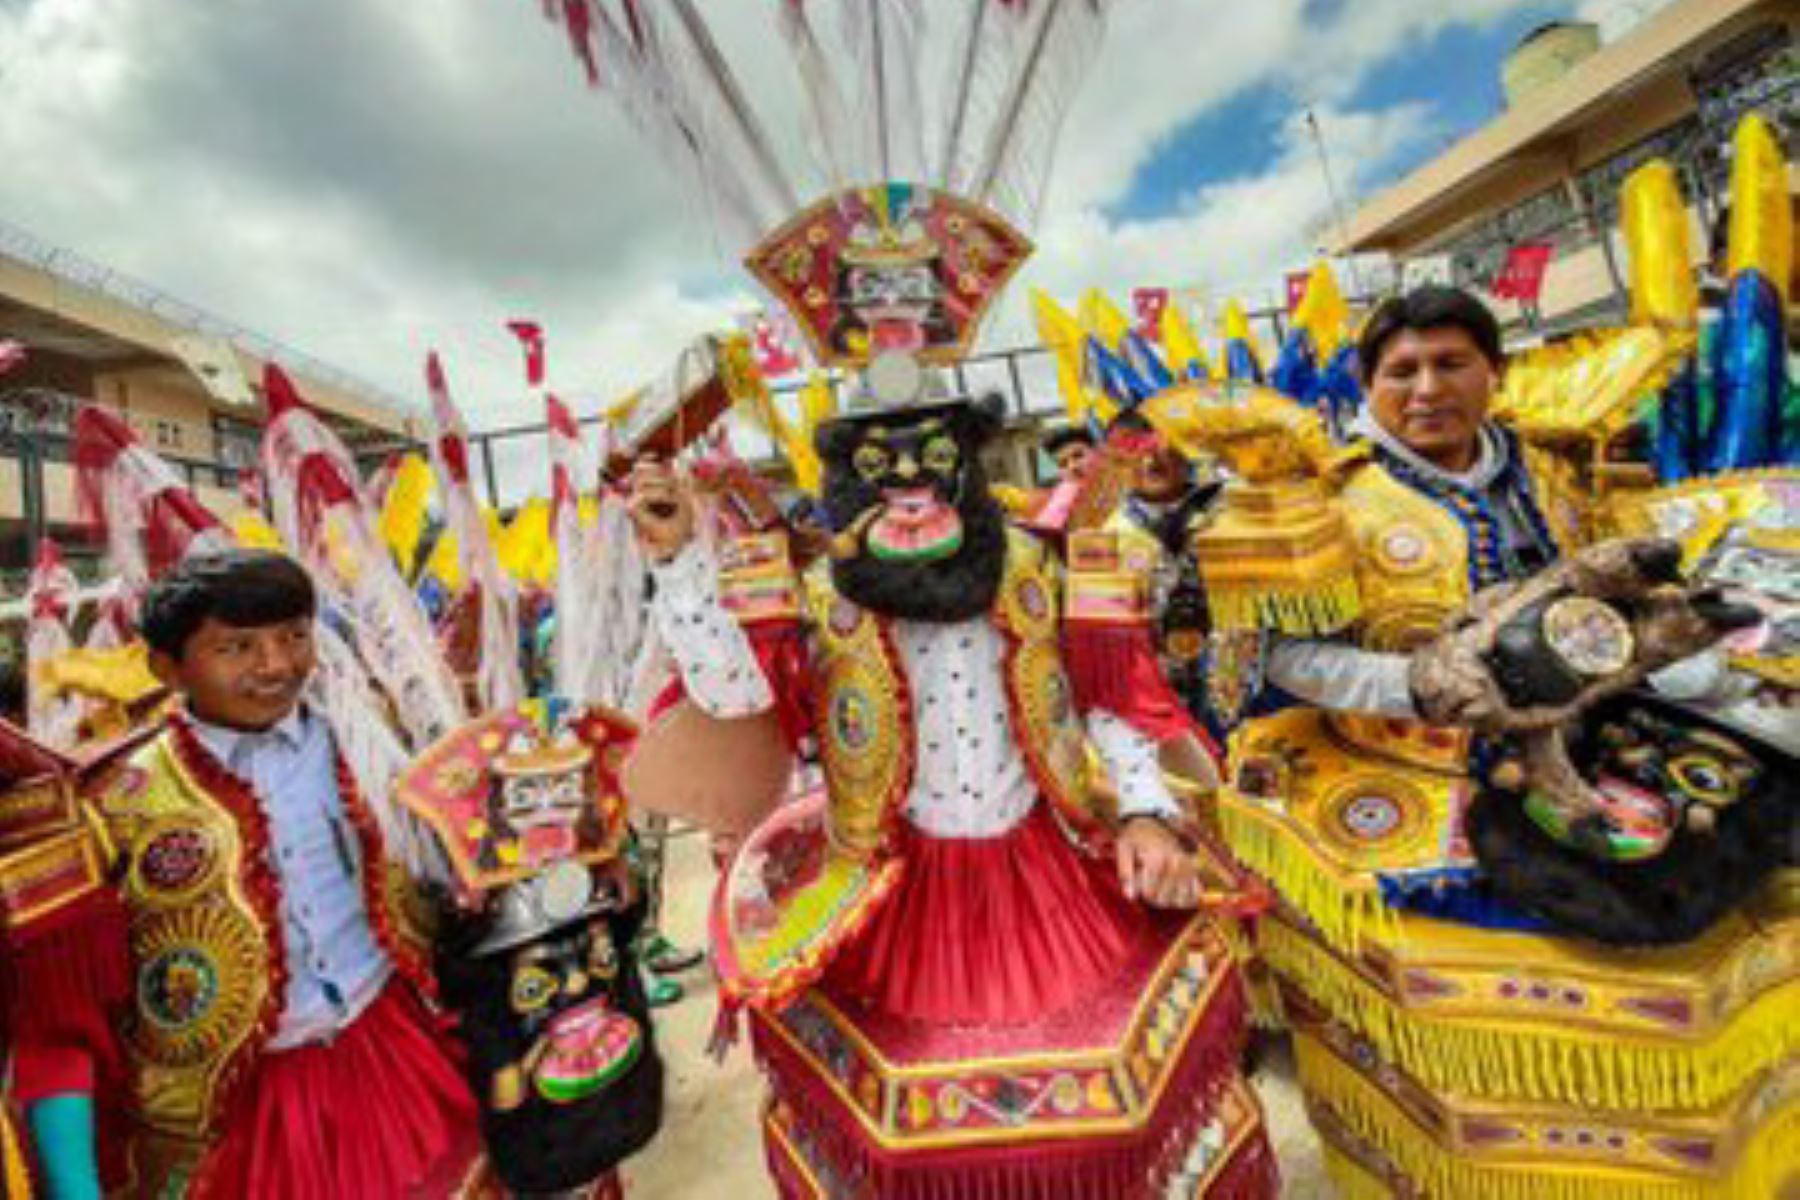 Con atuendos y máscaras multicolores, elaborados por internos del penal de Puno, se realizó el concurso de comparsas entre pabellones, en el marco de la festividad de la Virgen de la Candelaria, que es una de las más grandiosas e importantes celebraciones folclóricas regionales del país.